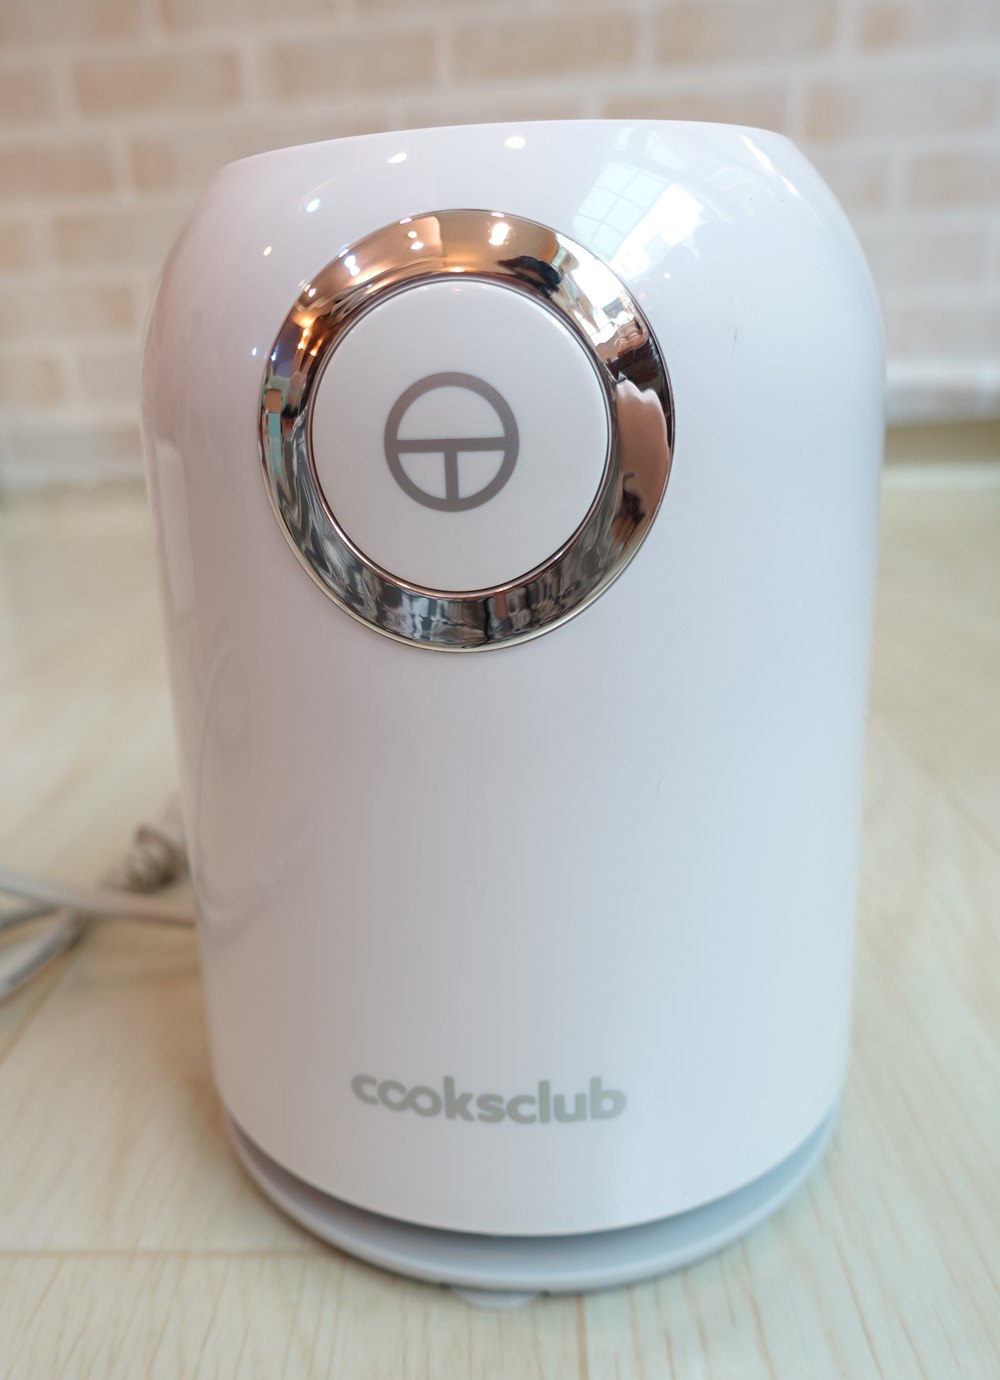 【白色家居】超美型澳洲cooksclub歡樂雙享輕巧果汁機~我的新歡小白隨行杯果汁機！